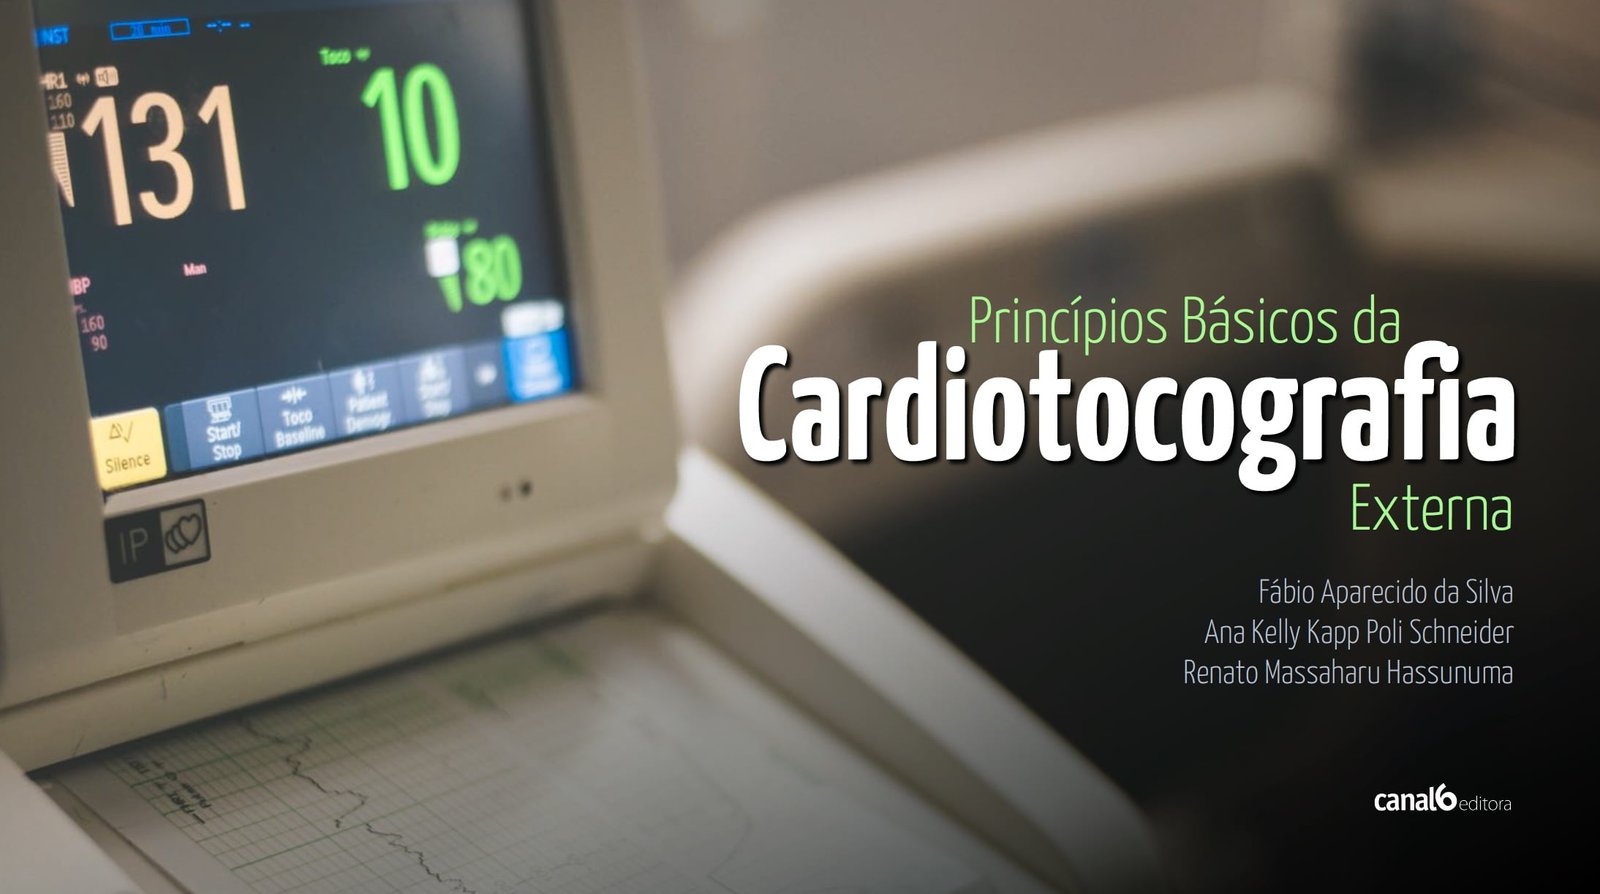 Principios basicos da cardiotocografia externa